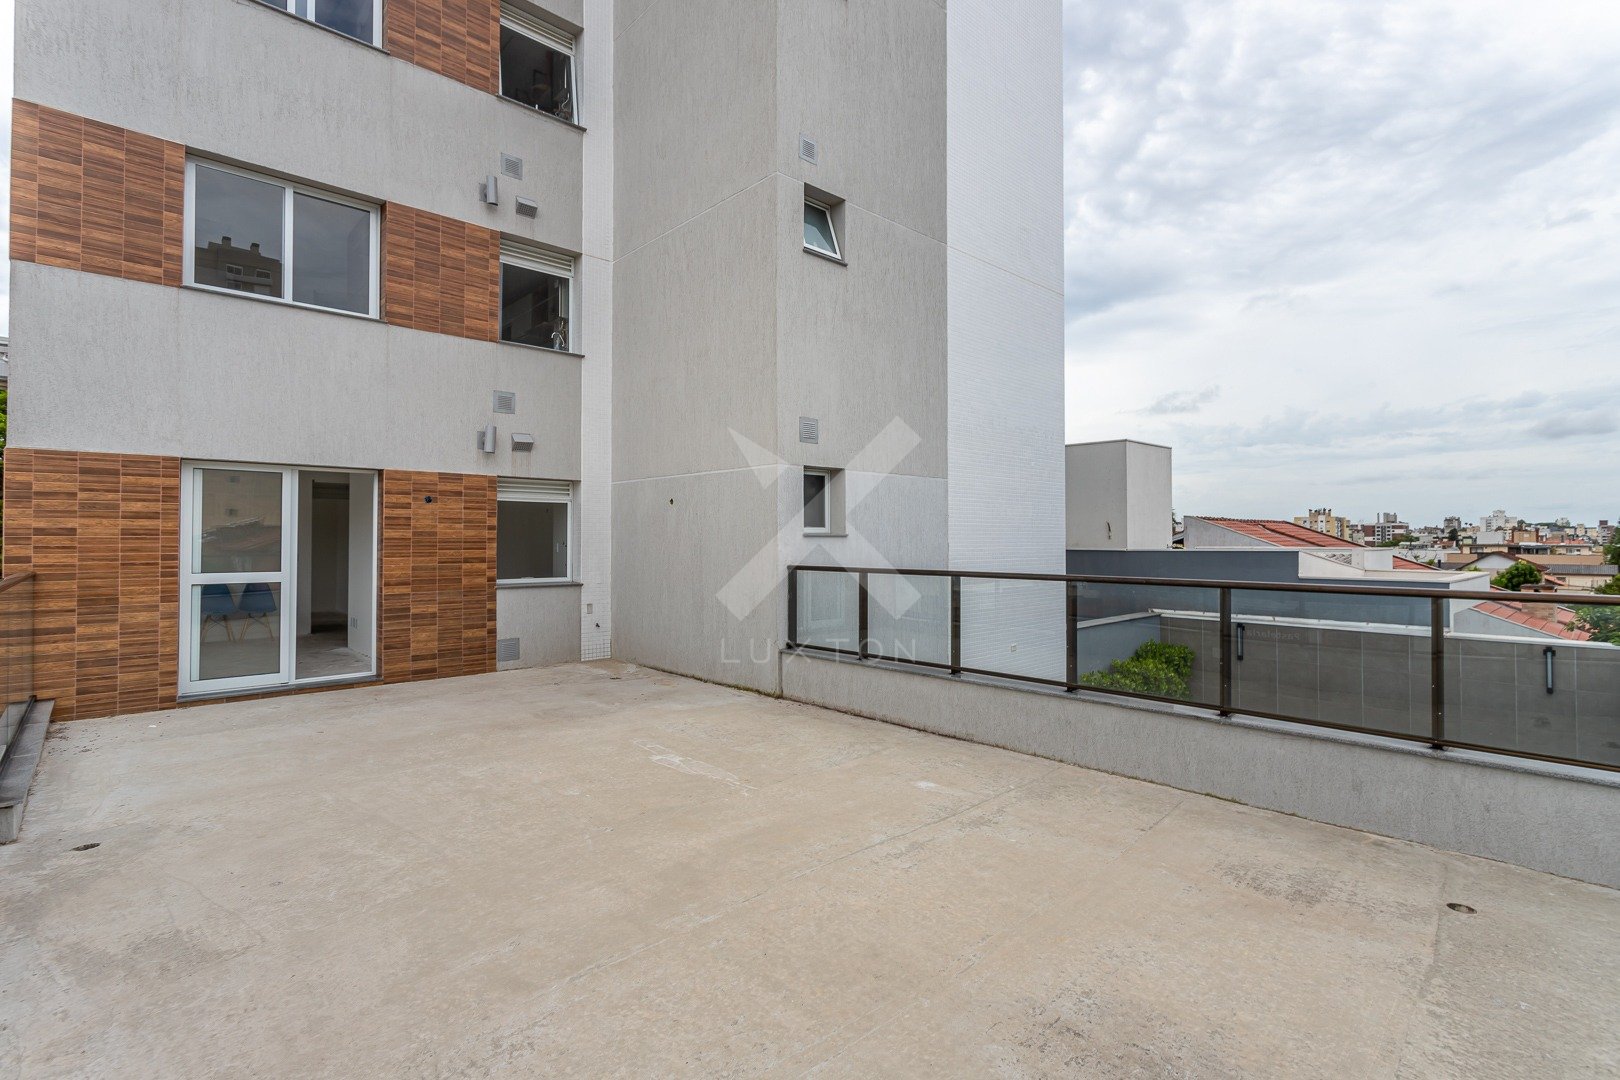 Apartamento Garden com 110m², 1 dormitório, 1 suíte, 2 vagas, no bairro Passo da Areia em Porto Alegre para Comprar